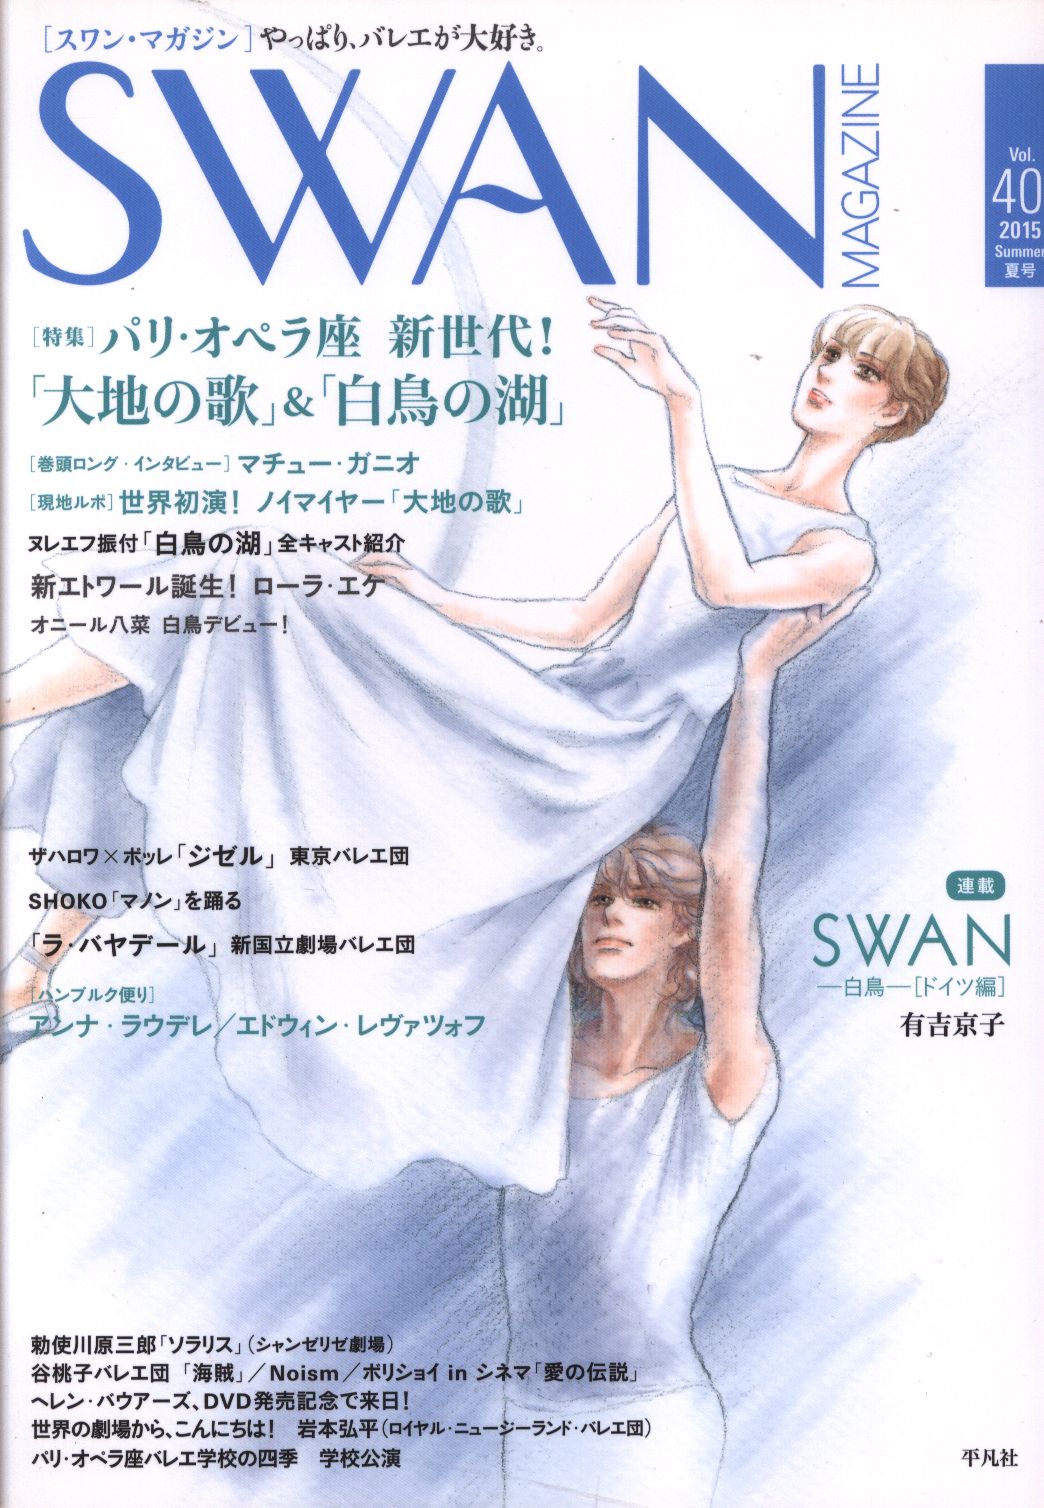 有吉京子 Swan Magazine 15 夏 40 まんだらけ Mandarake